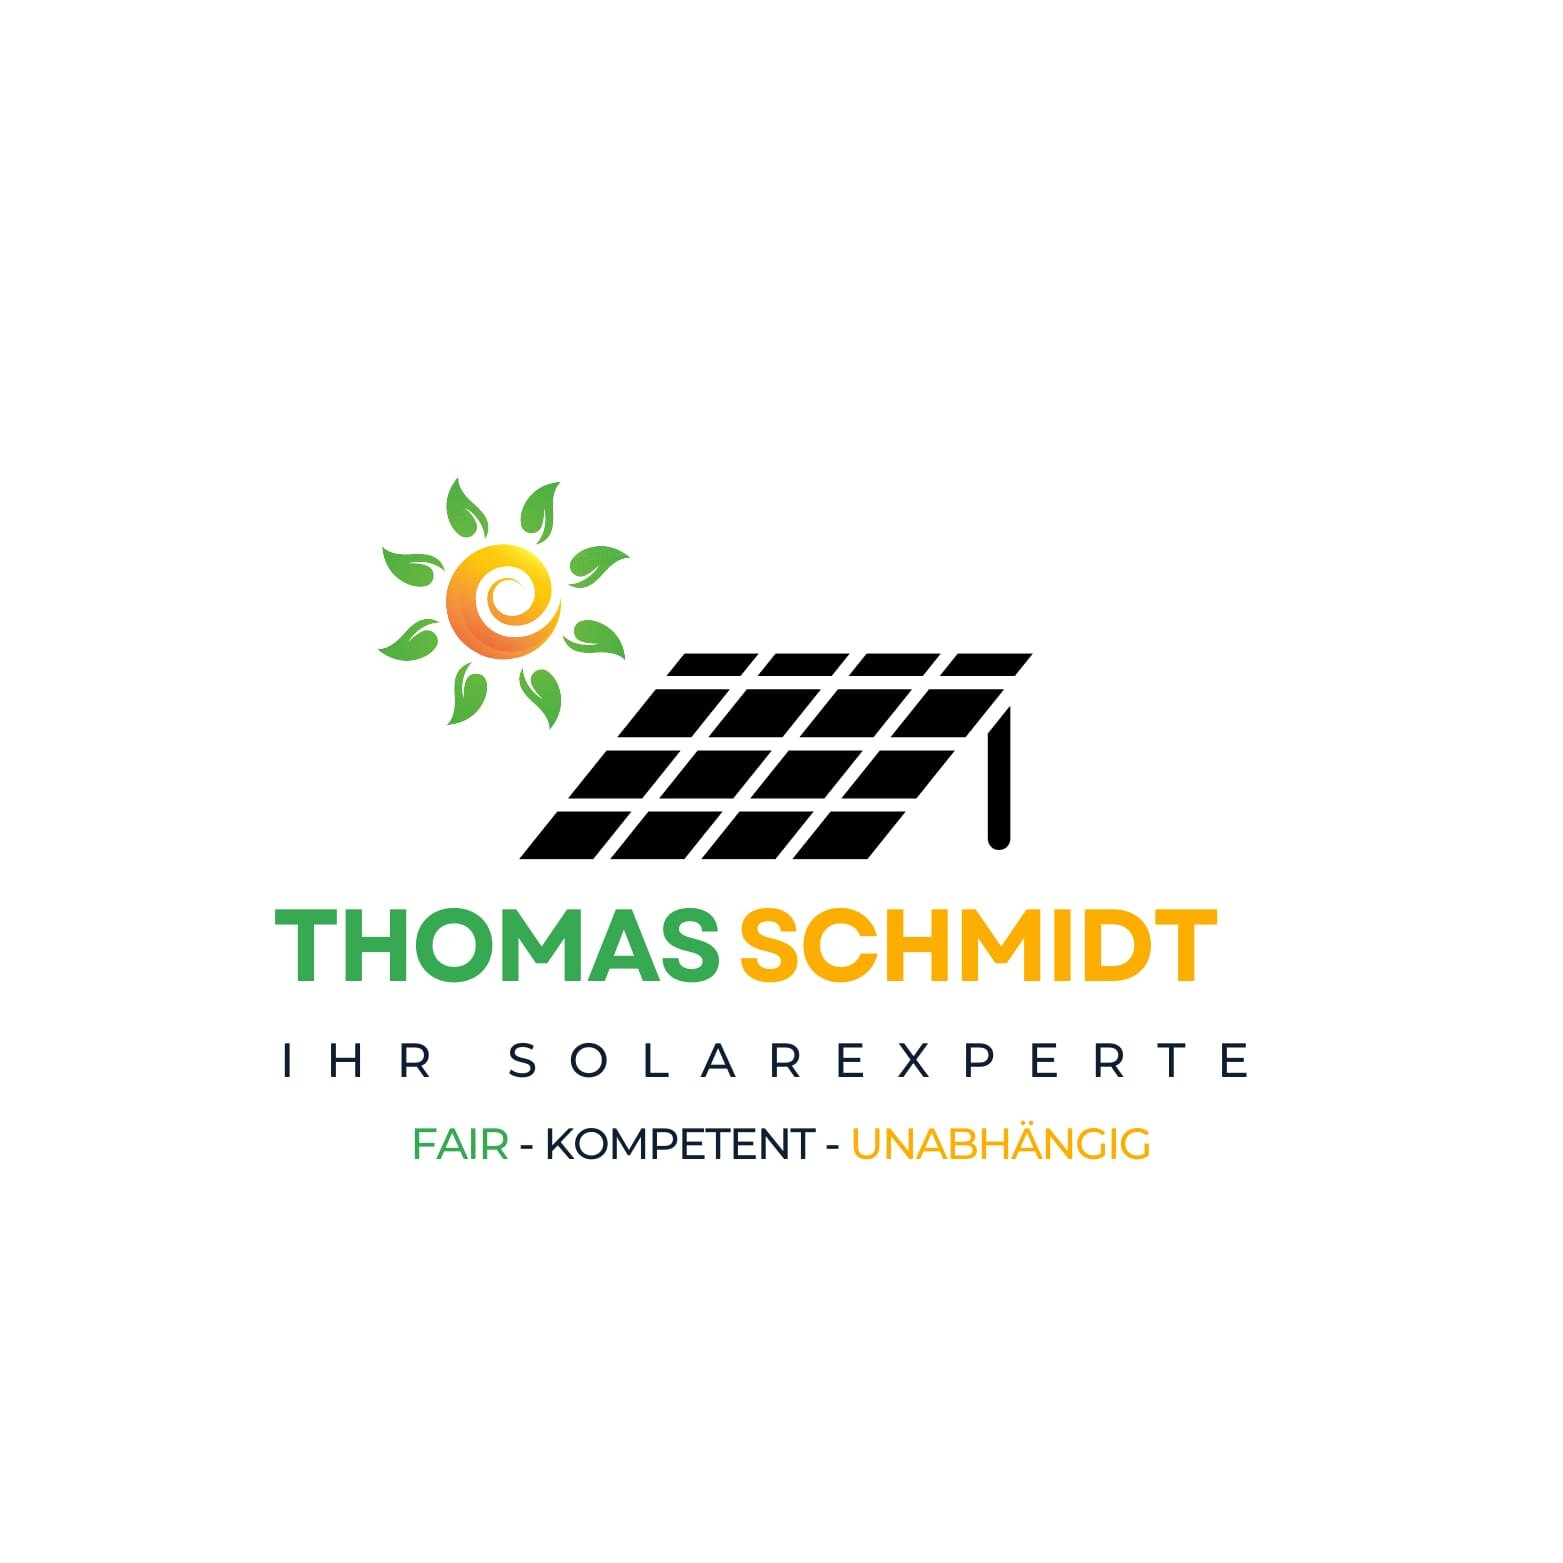 Kundenbild groß 6 IHR-SOLAREXPERTE Thomas Schmidt fair kompetent unabhängig